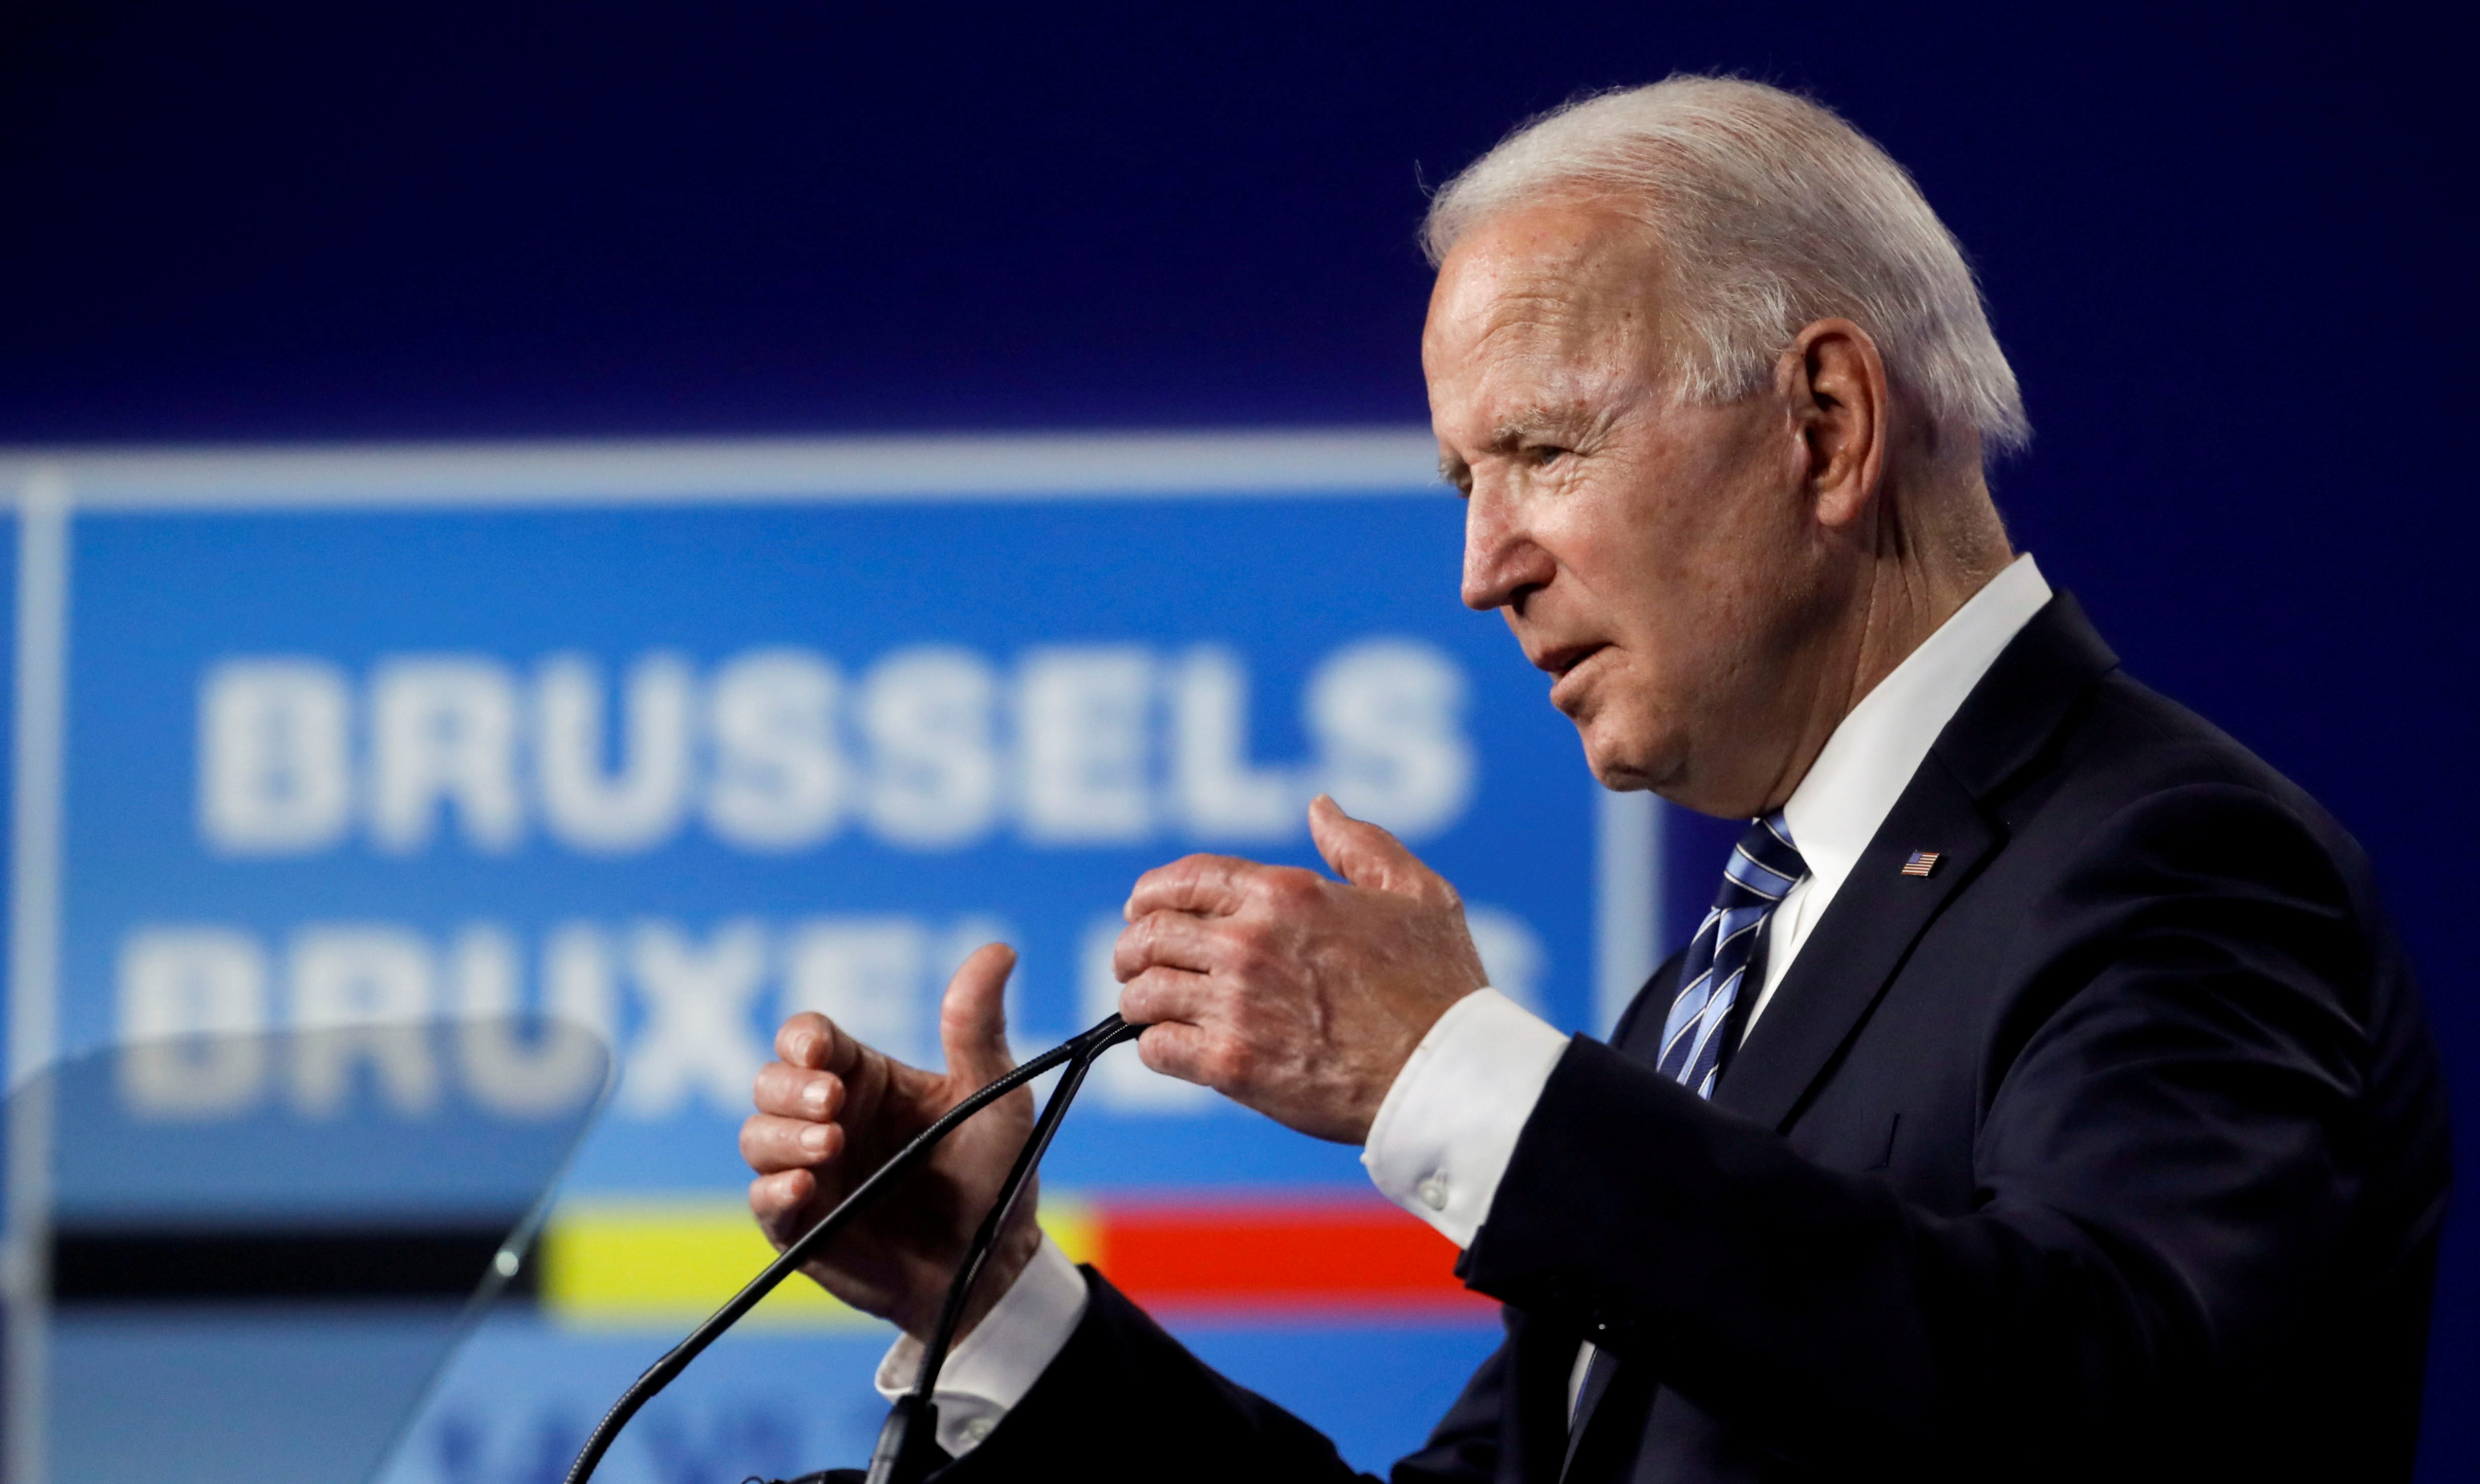 After NATO, Biden turns to EU for renewal of transatlantic ties